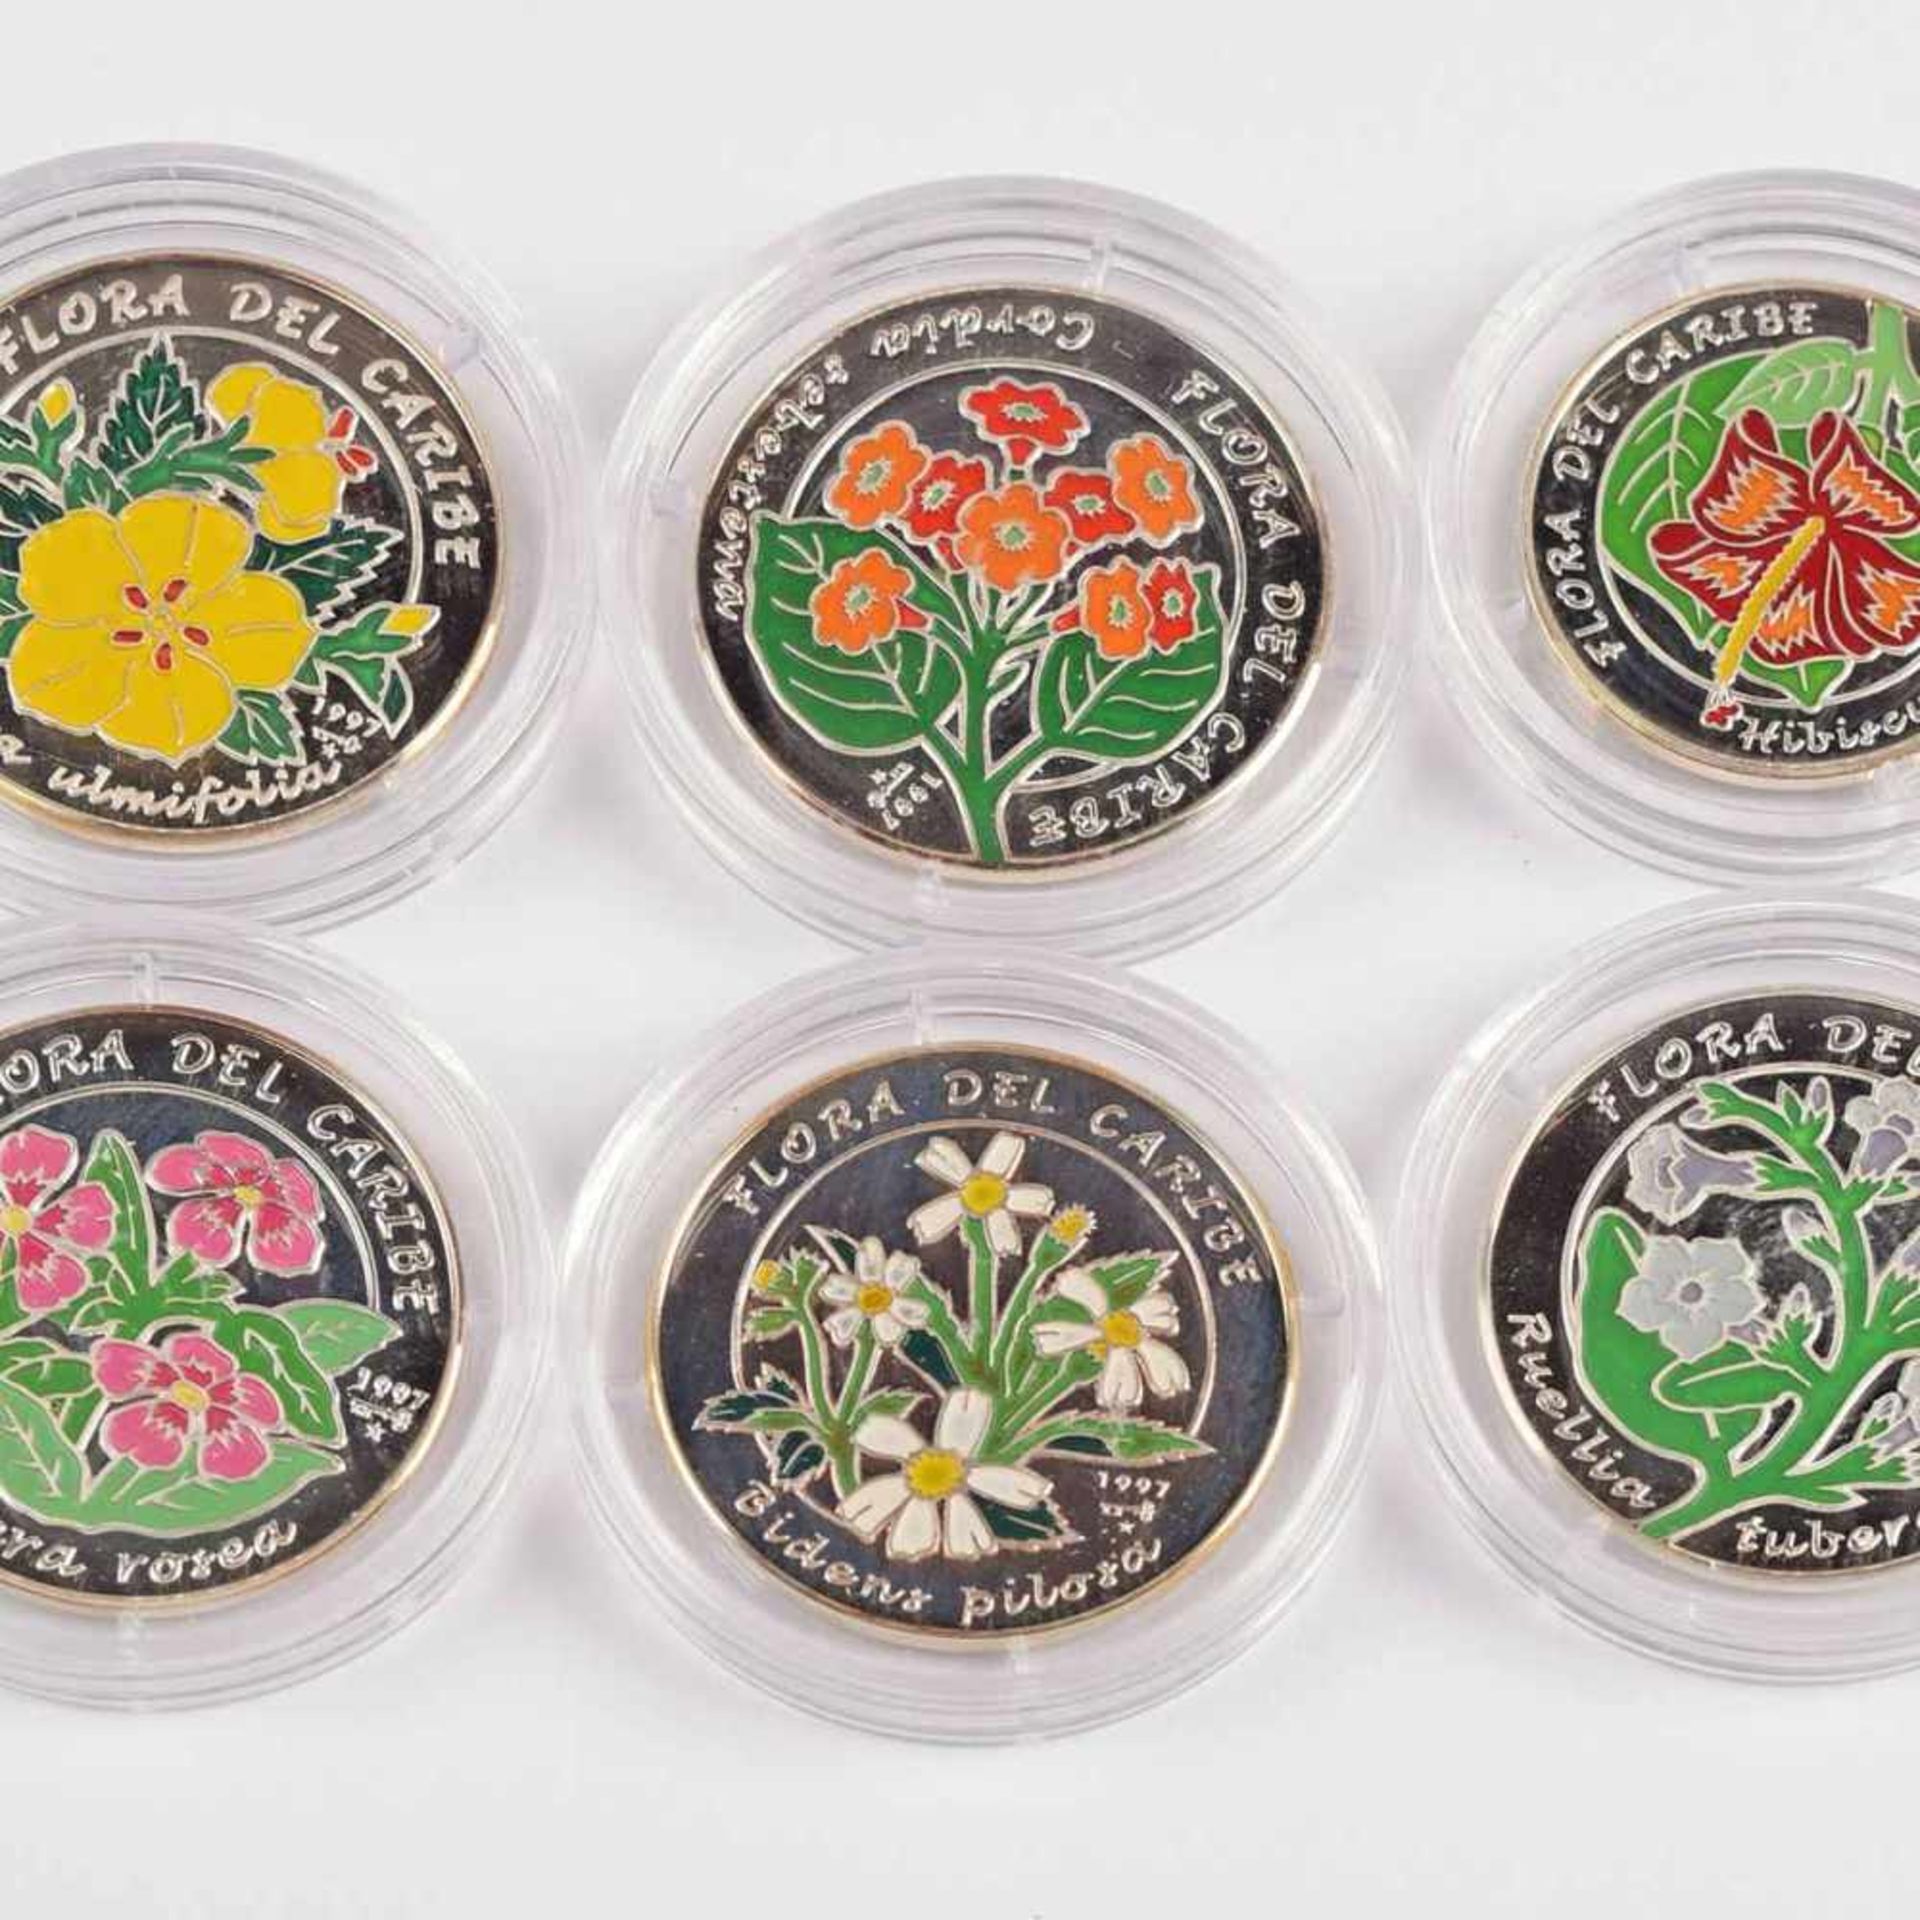 Konvolut Feinsilbermünzen Kuba insg. 7 verschiedene Feinsilber-Farbmünzen, aus der Serie "Flora